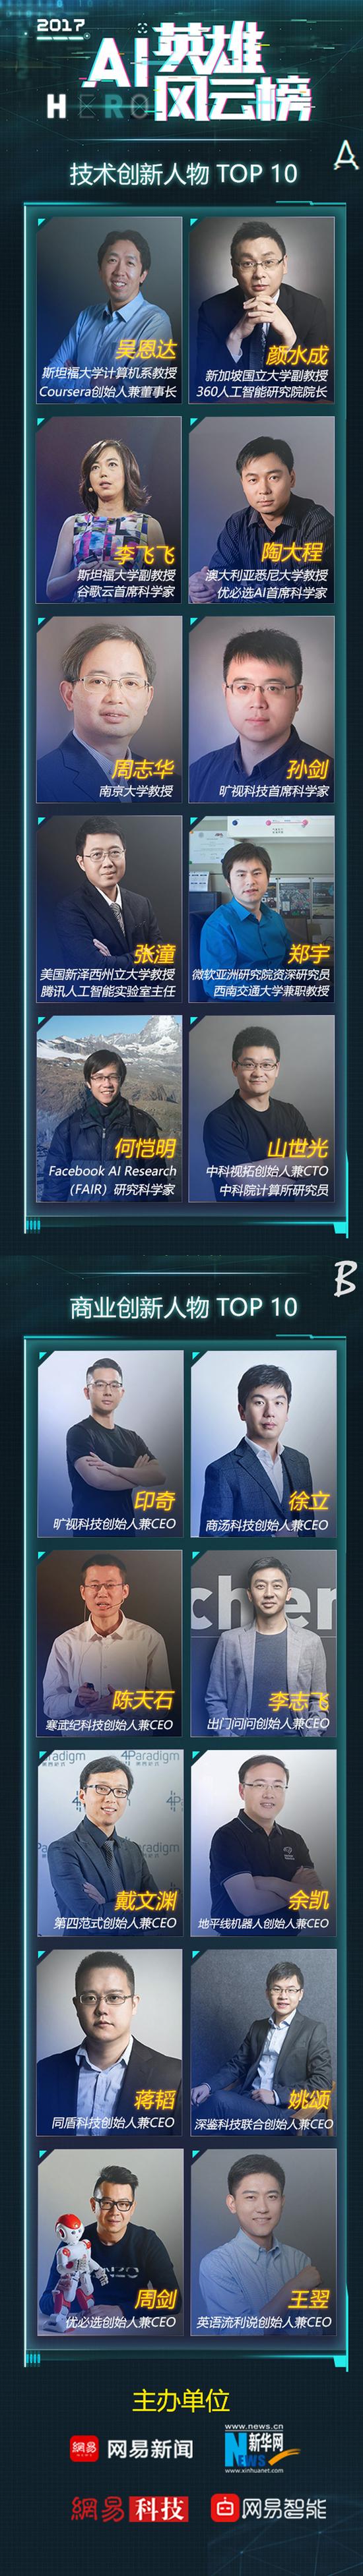 报名：AI英雄风云榜颁奖典礼12月18日将在北京举行